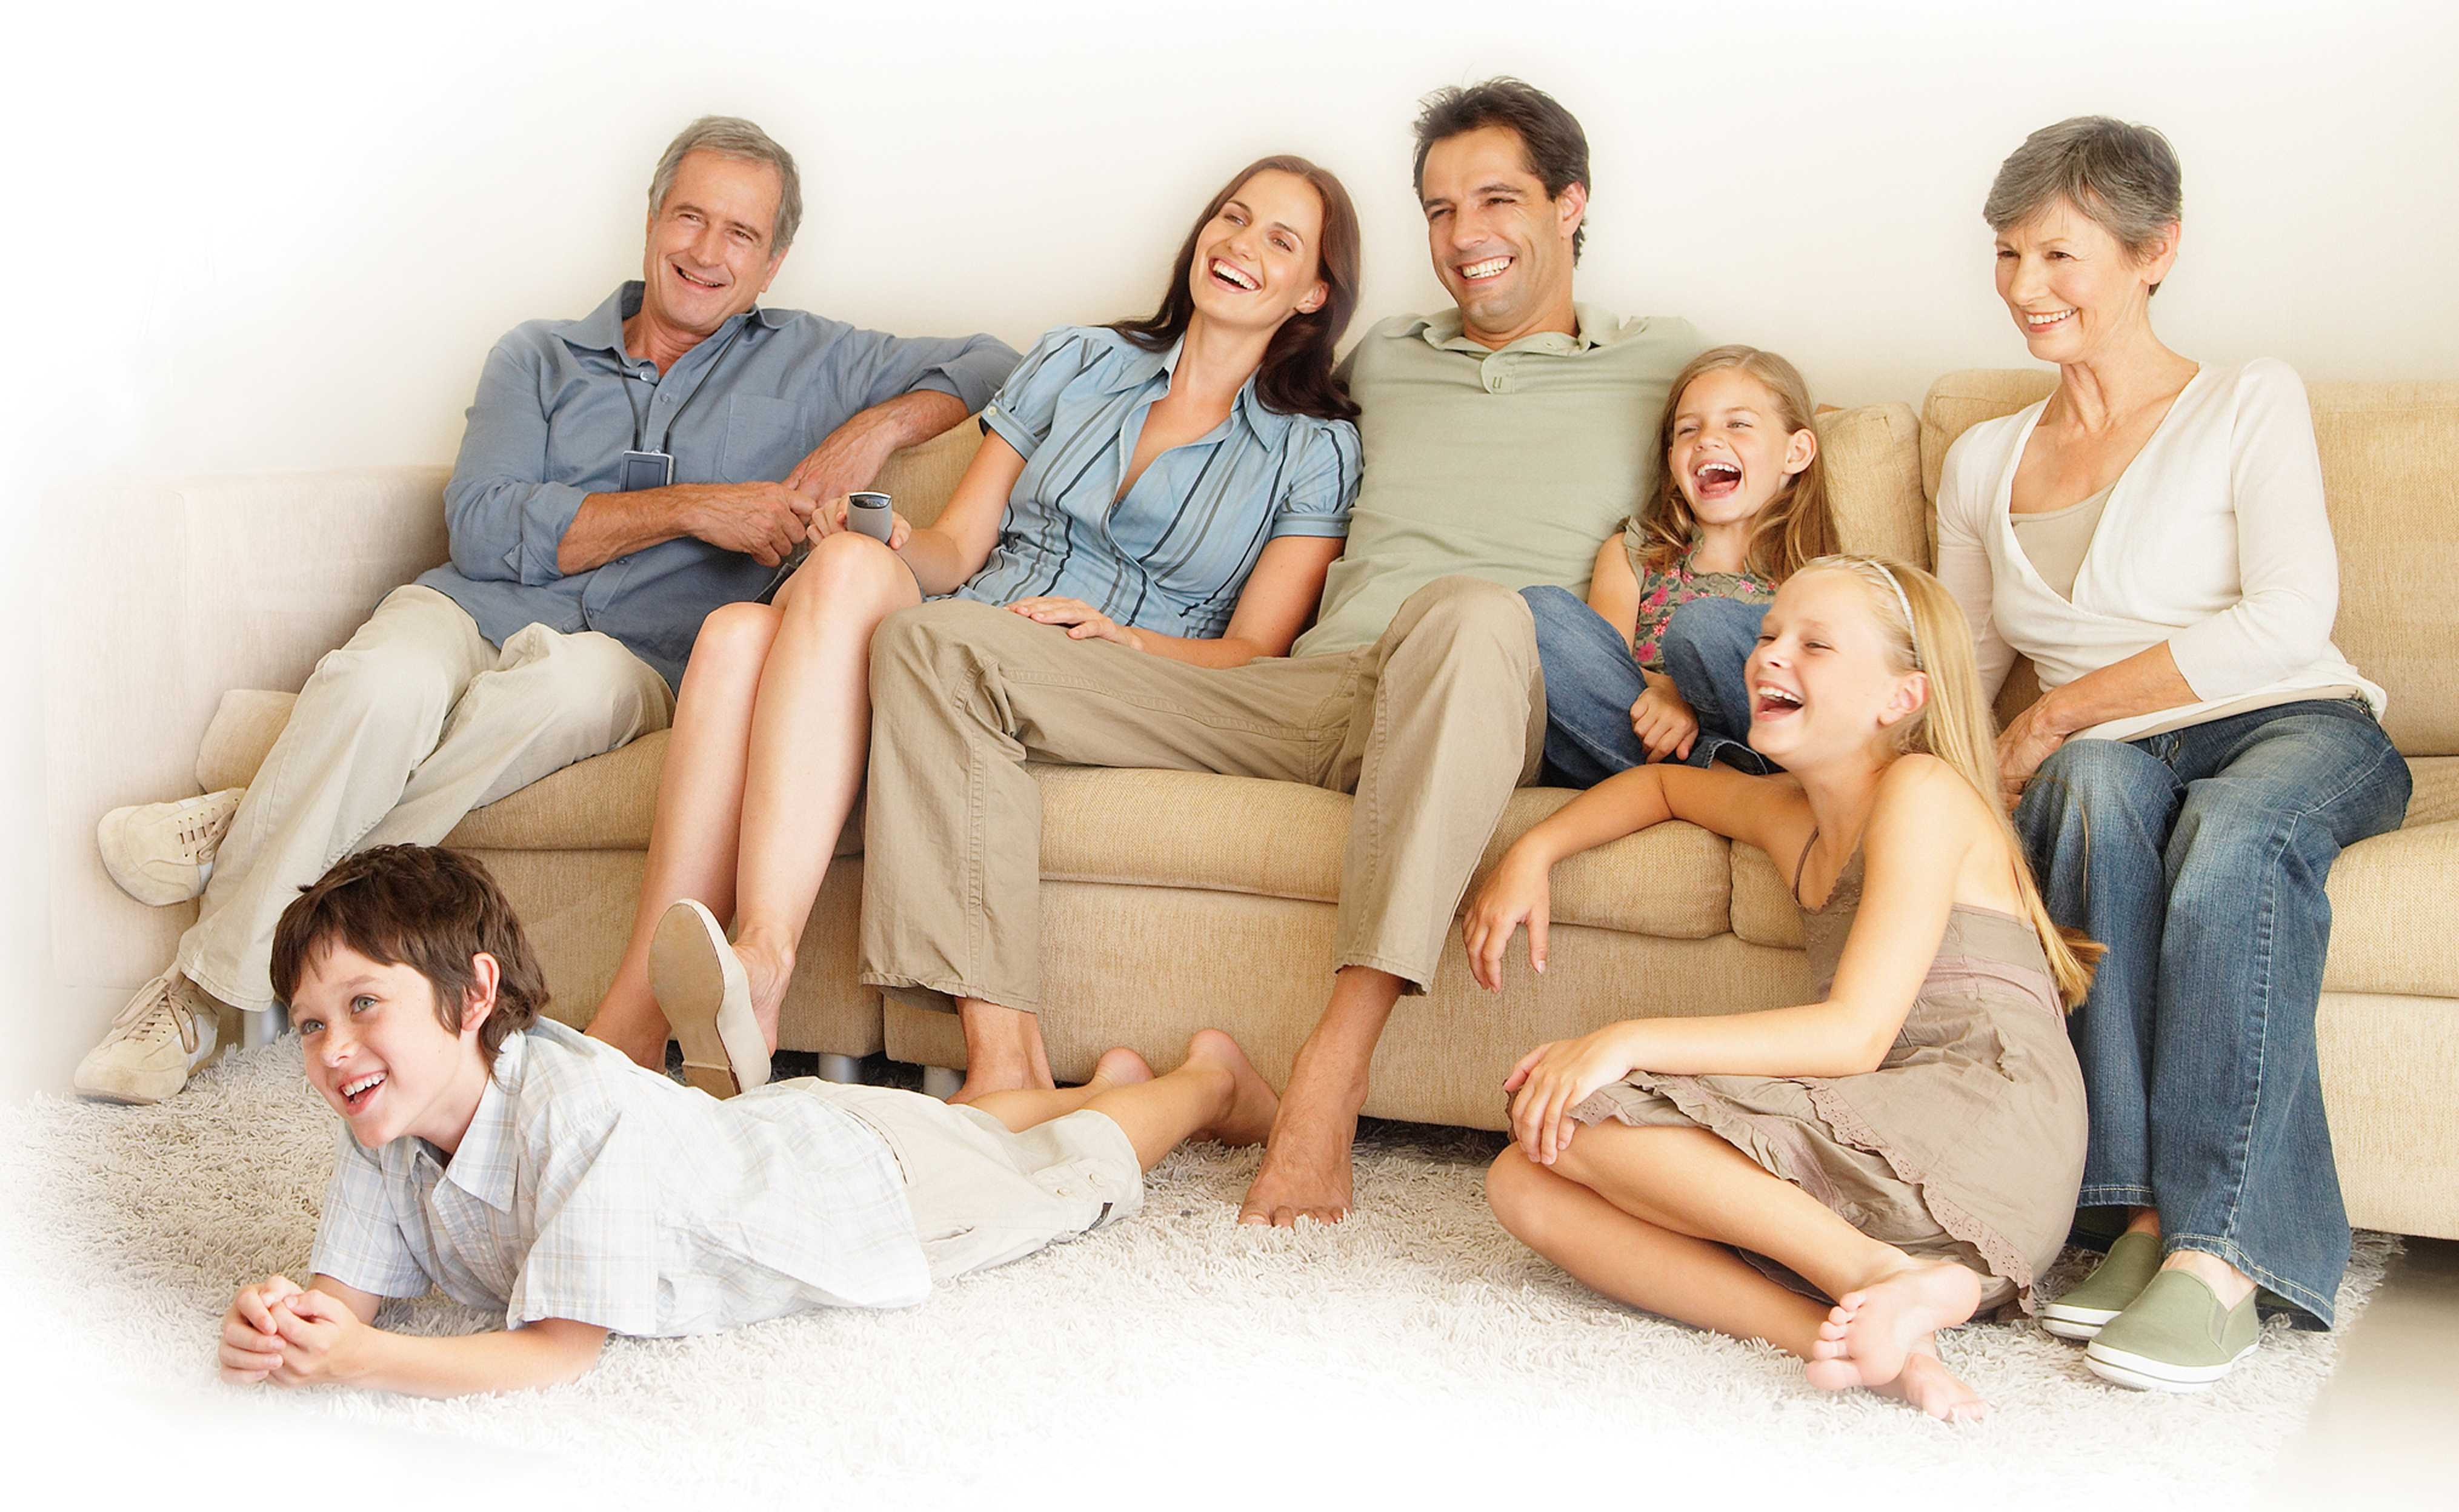 Watching their lives. Семья, дом. Семья у телевизора. Семья на диване. Семья сидит в гостиной.